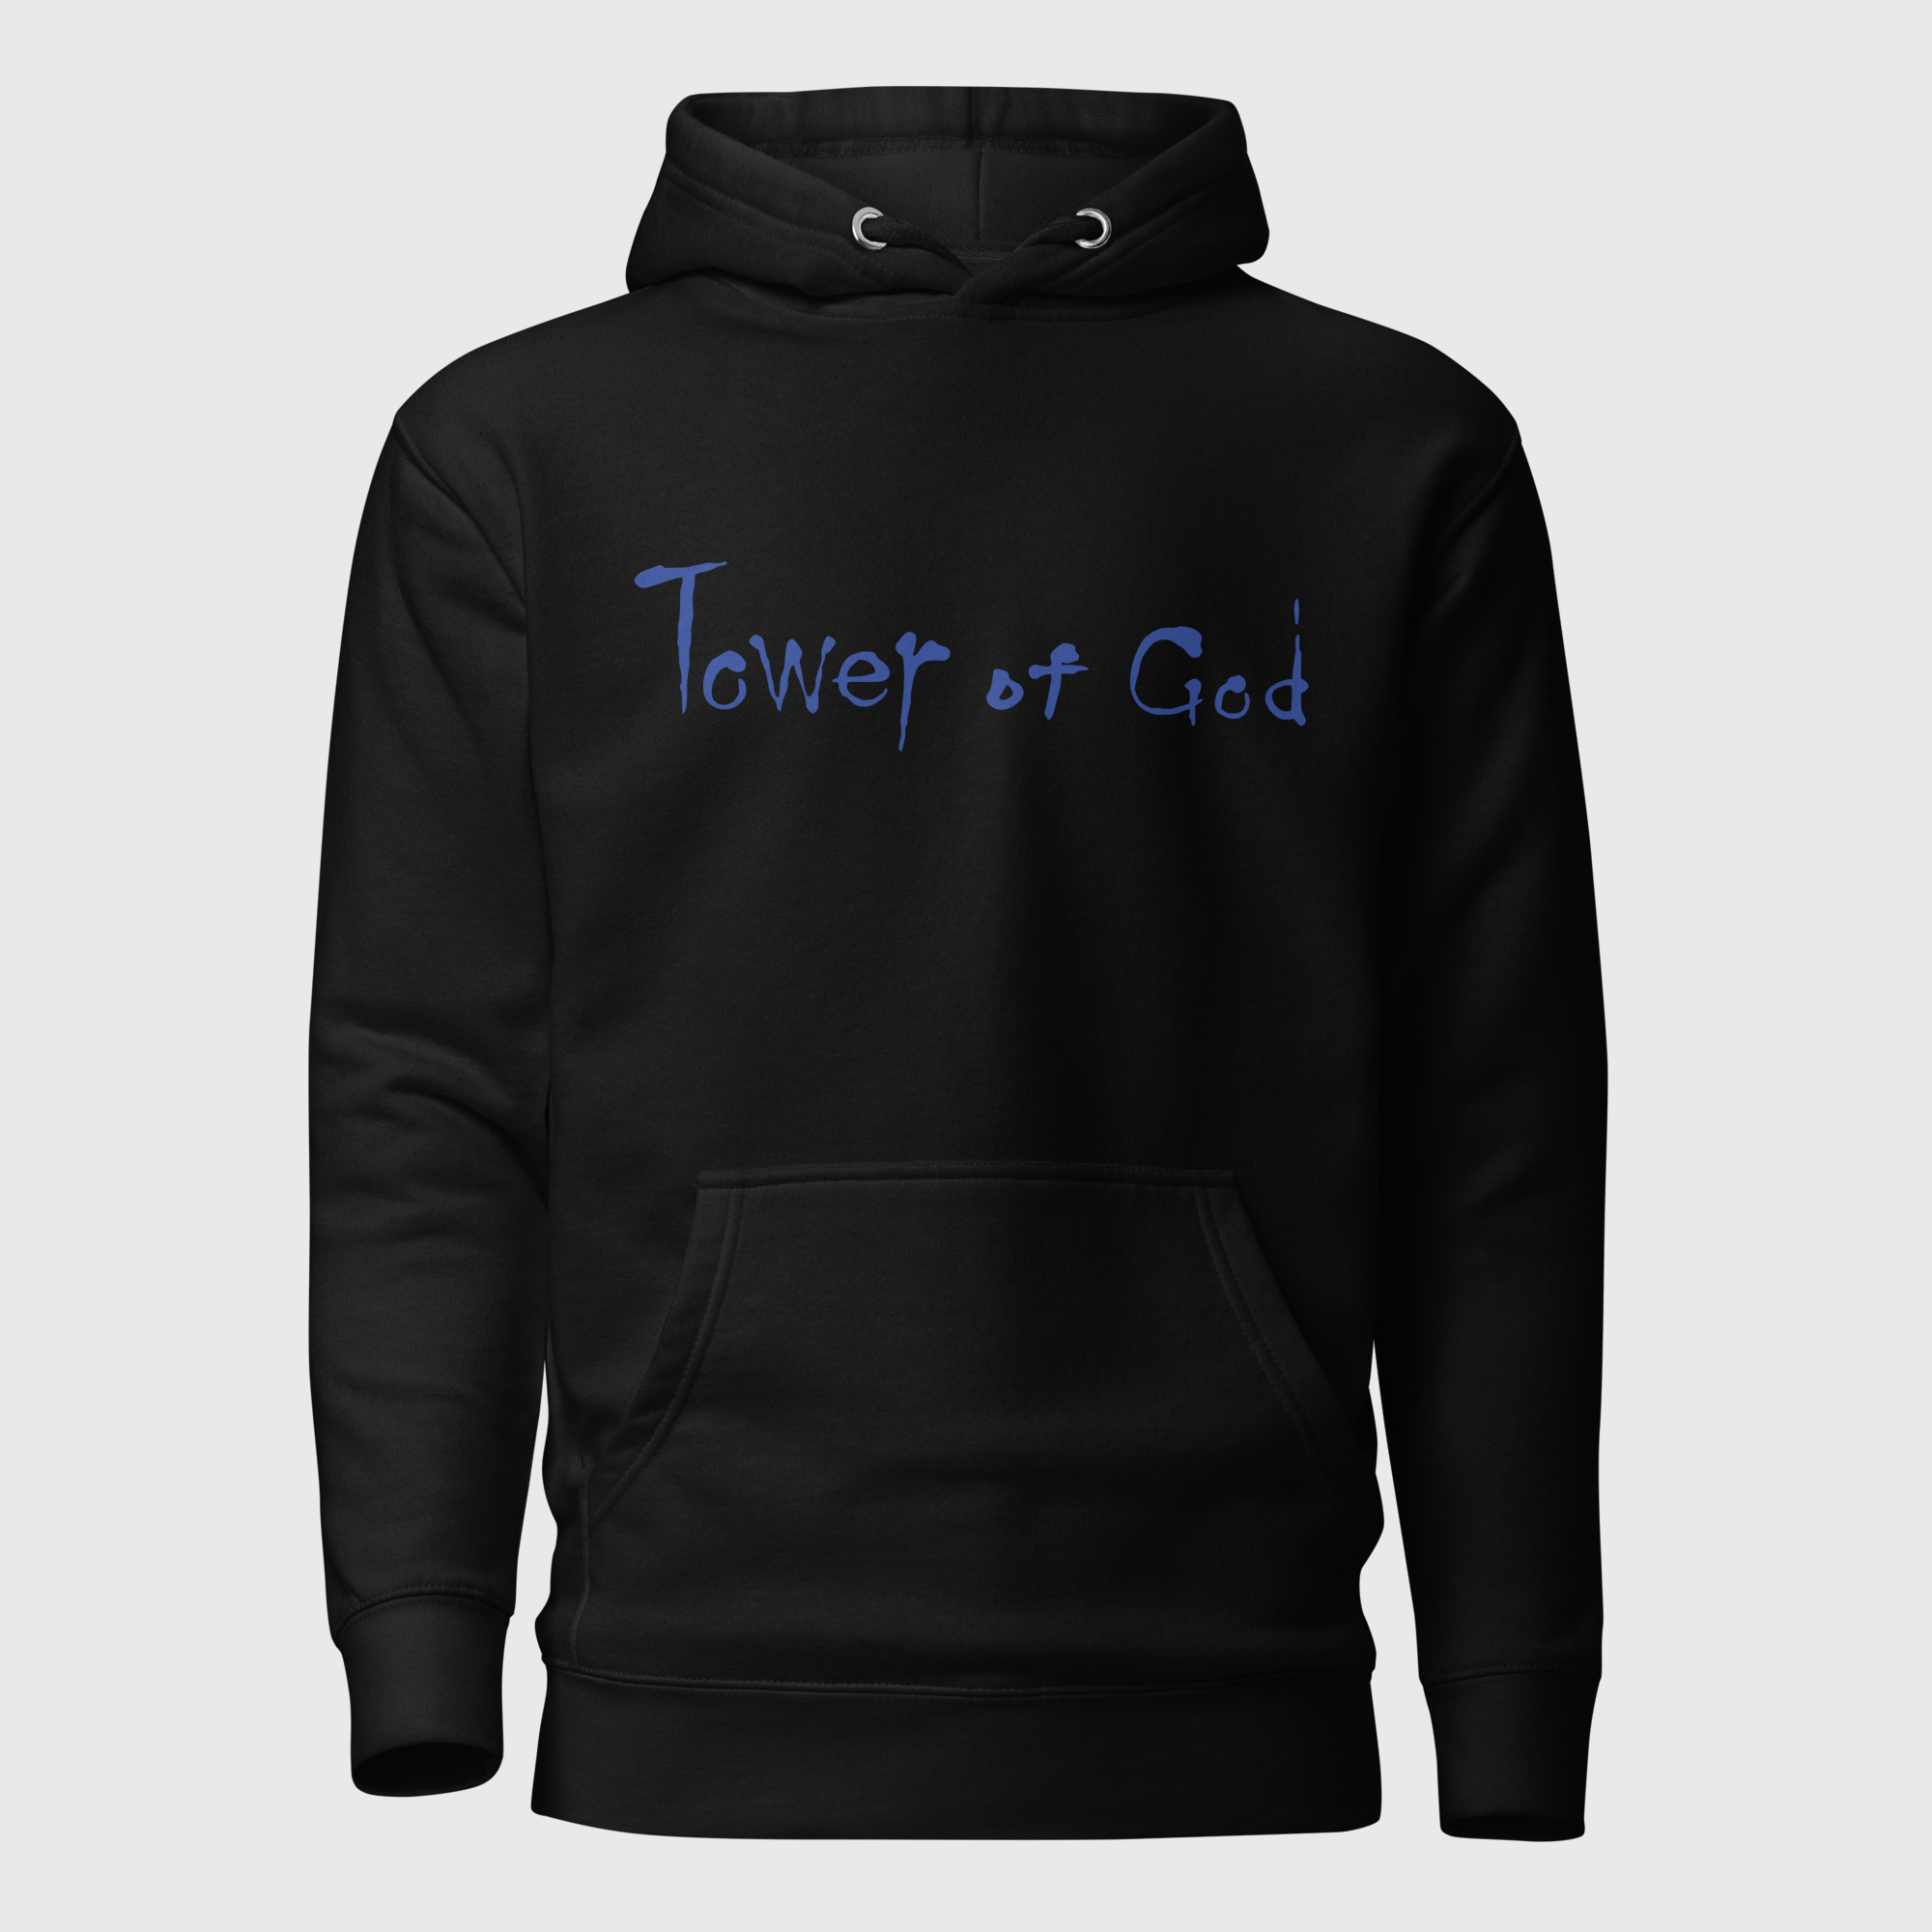 Shop Tower Of God online